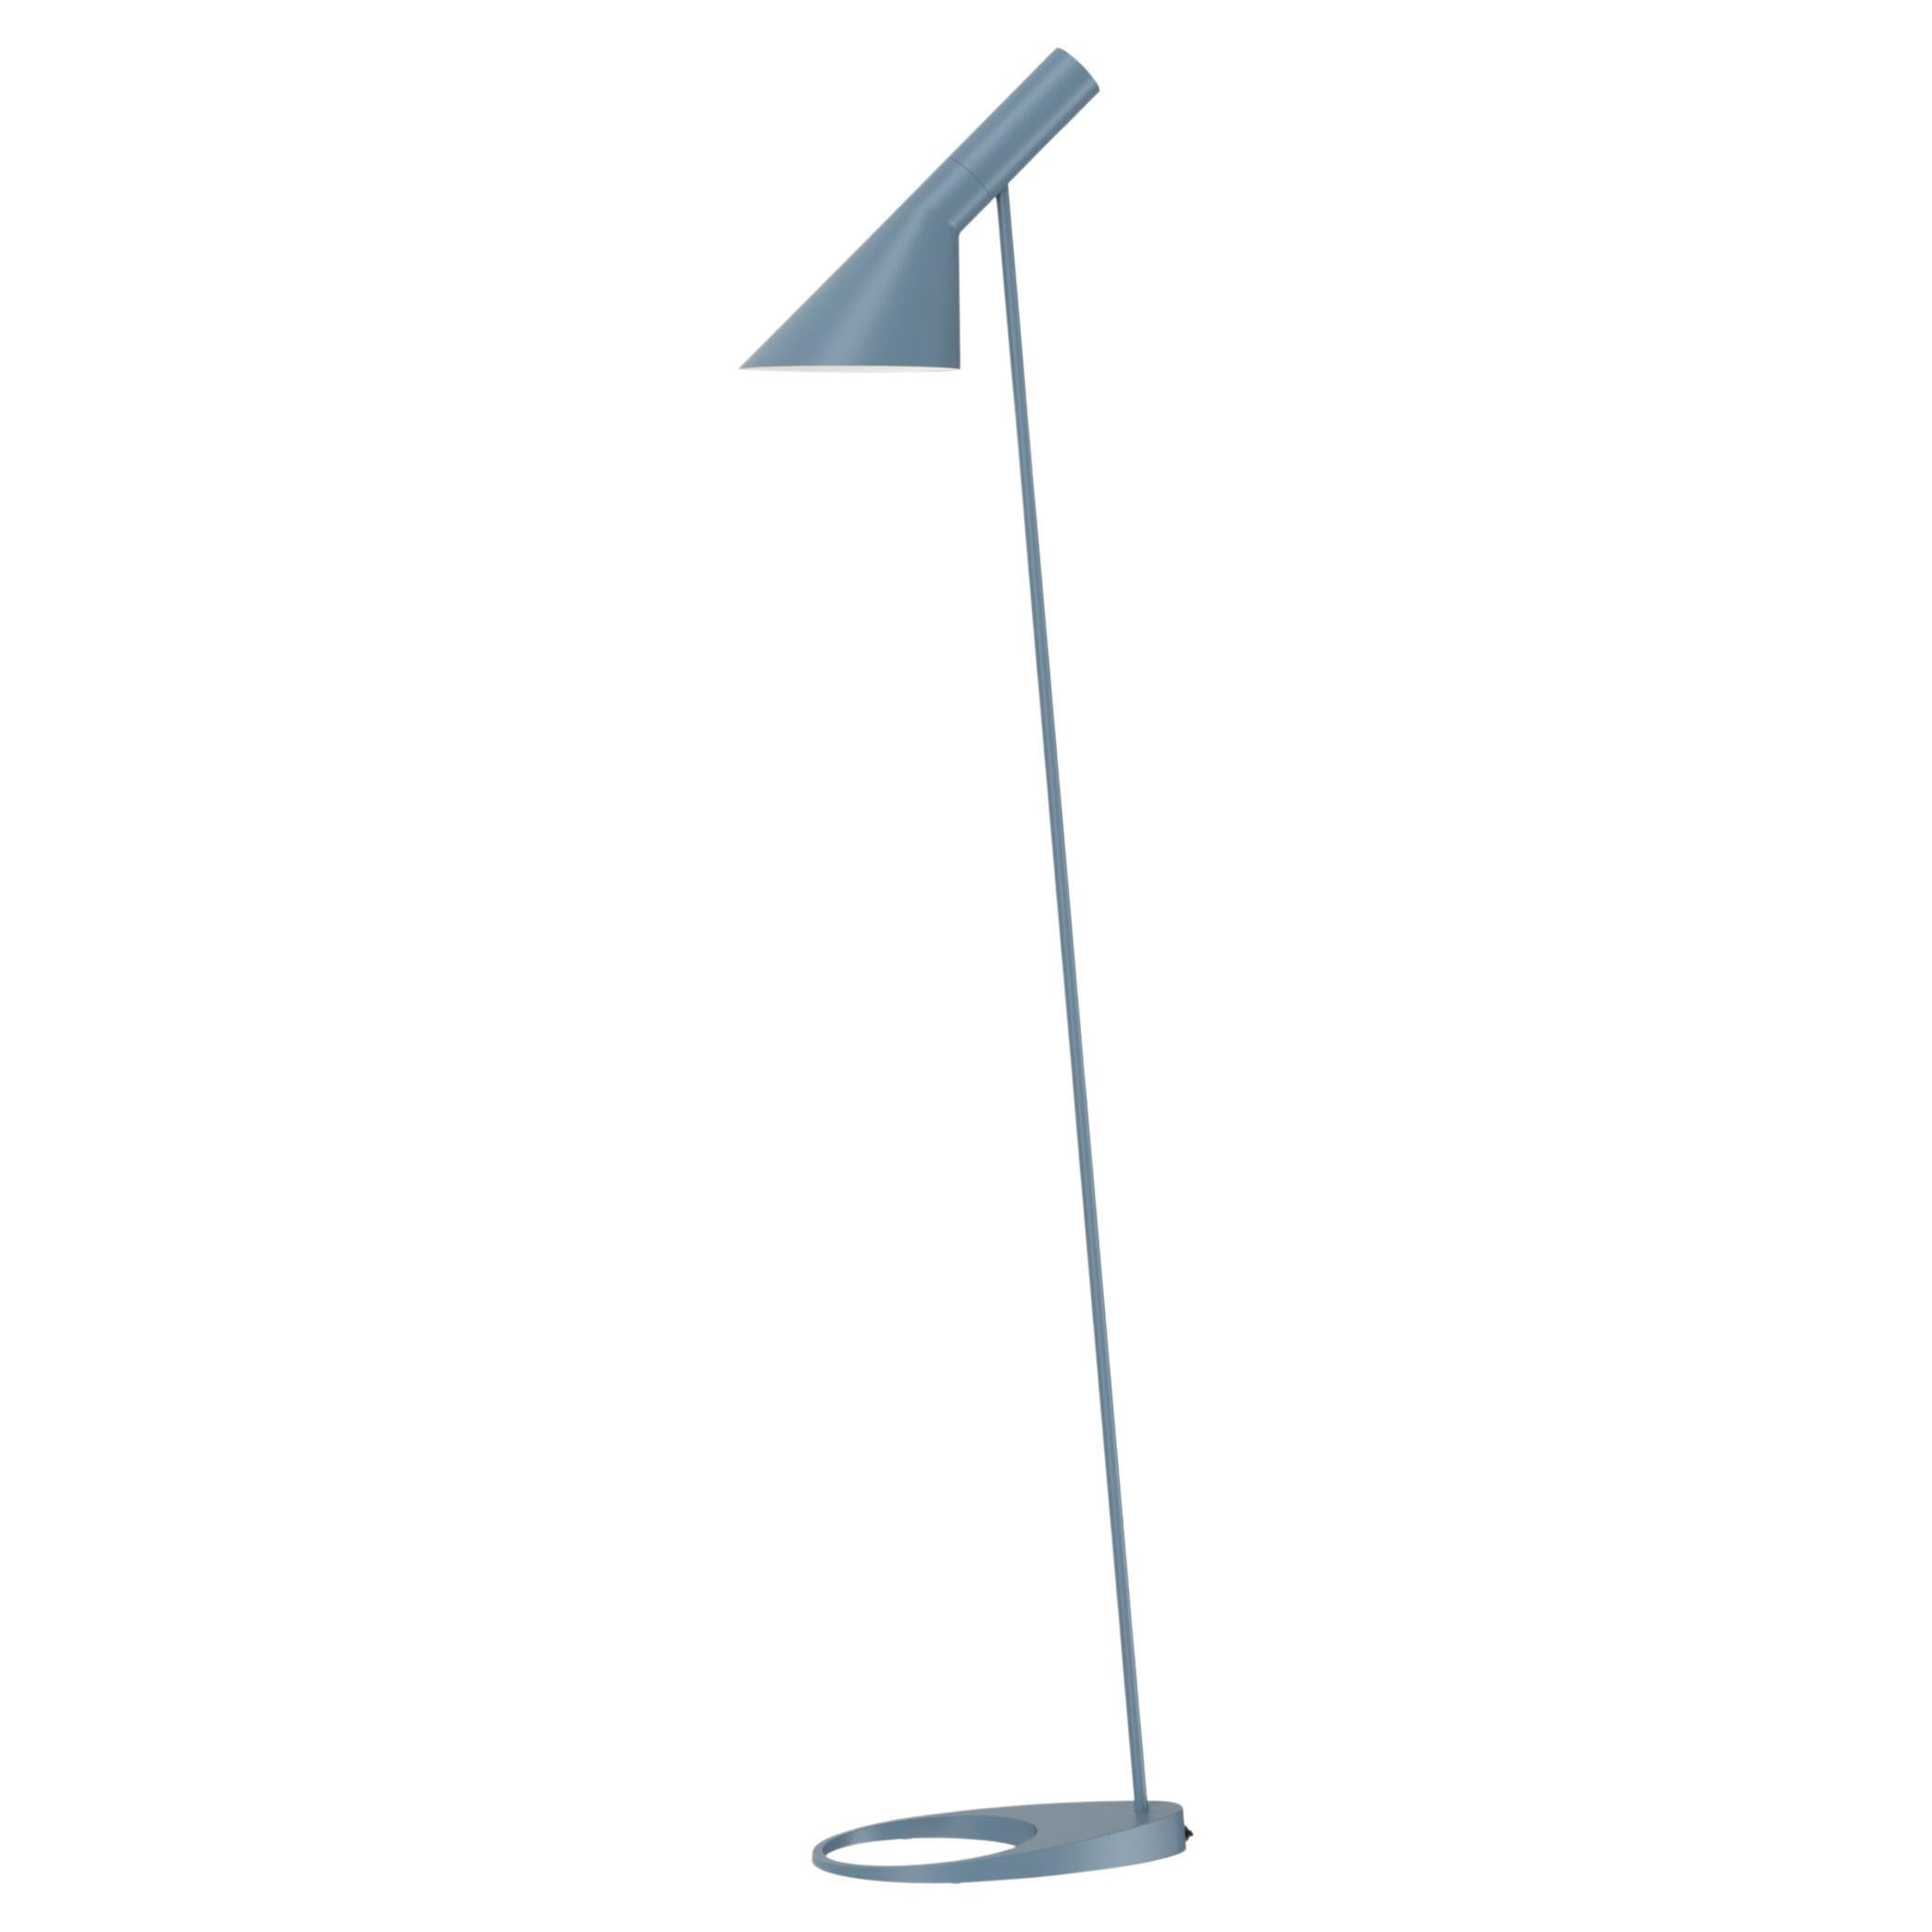 Arne Jacobsen AJ Floor Lamp in Dusty Blue for Louis Poulsen For Sale